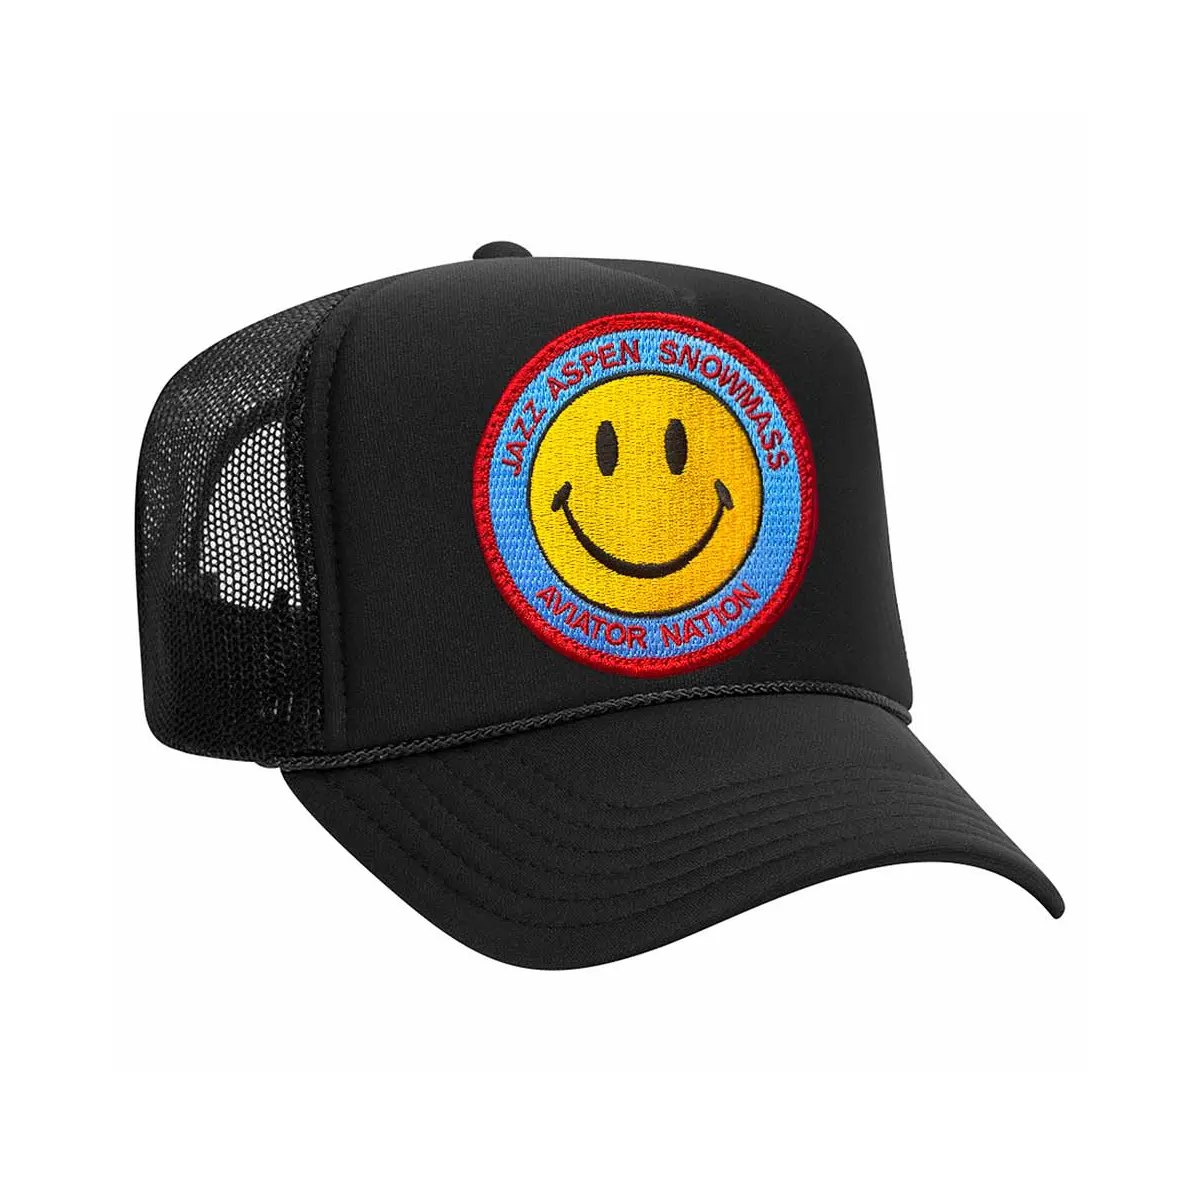 Gorra de camionero de espuma con logotipo bordado OEM, gorro de camionero unisex de 5 paneles de alta calidad, gorra deportiva de malla personalizada, color negro